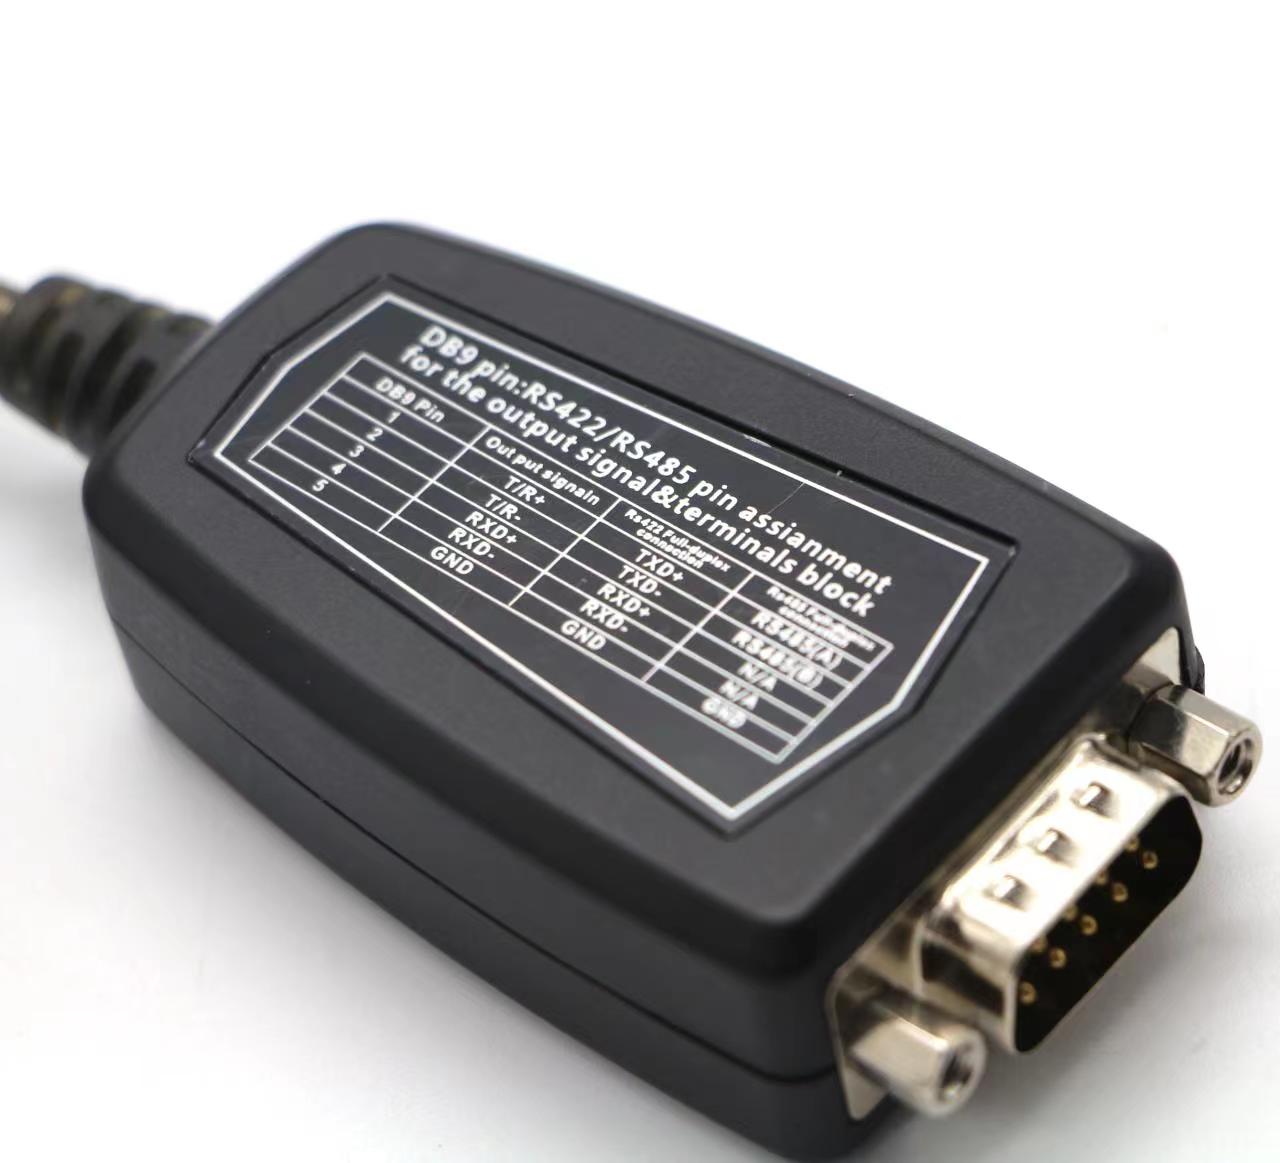 Bra kompatibel RS232 -chipset DB9 till USB -drivrutin för kassregister, modem,